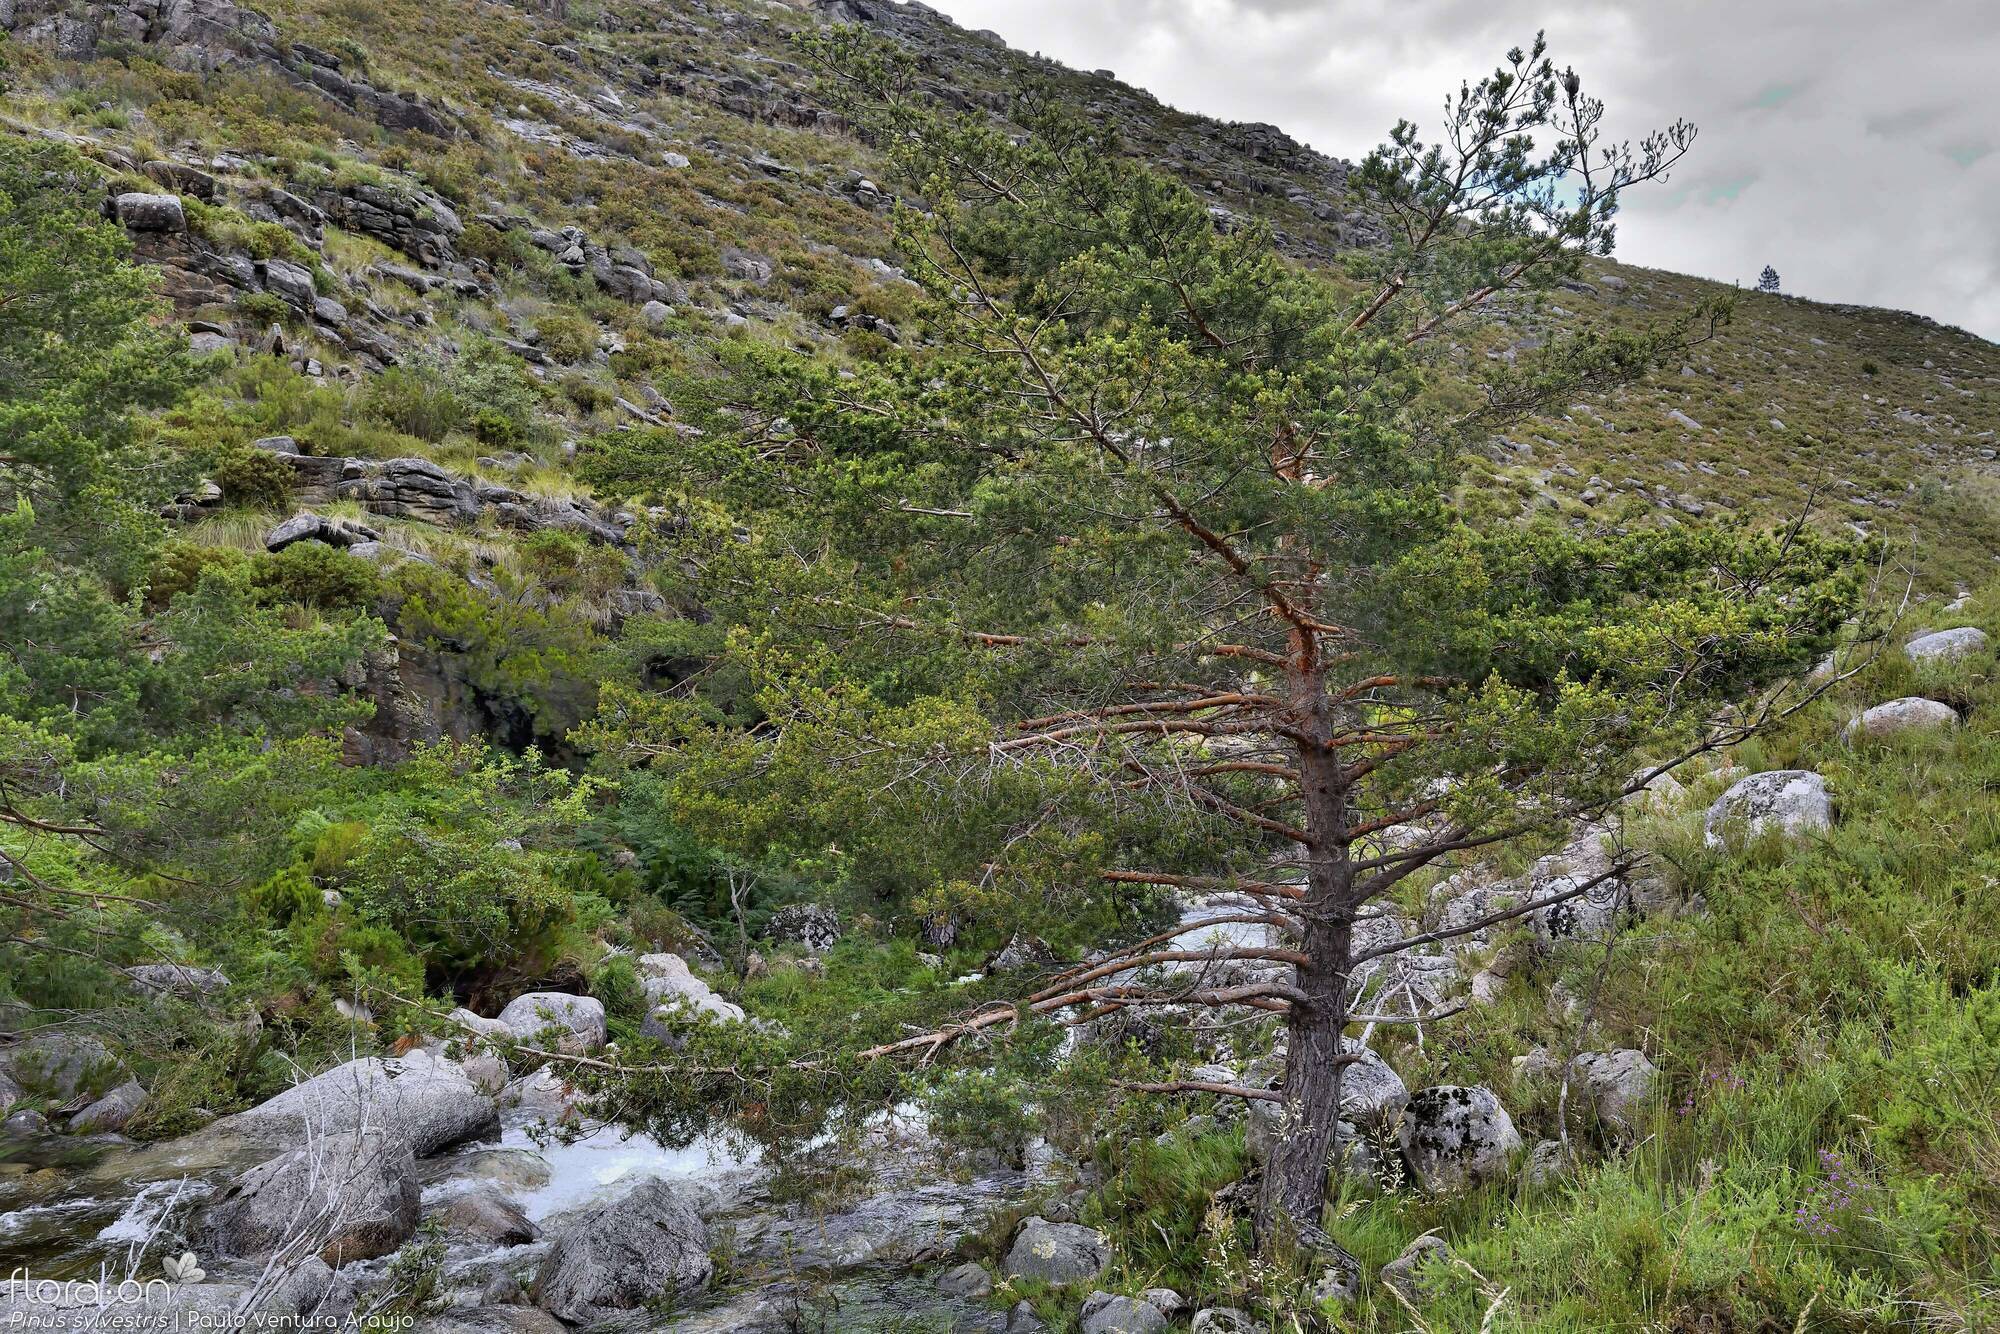 Pinus sylvestris - Hábito | Paulo Ventura Araújo; CC BY-NC 4.0